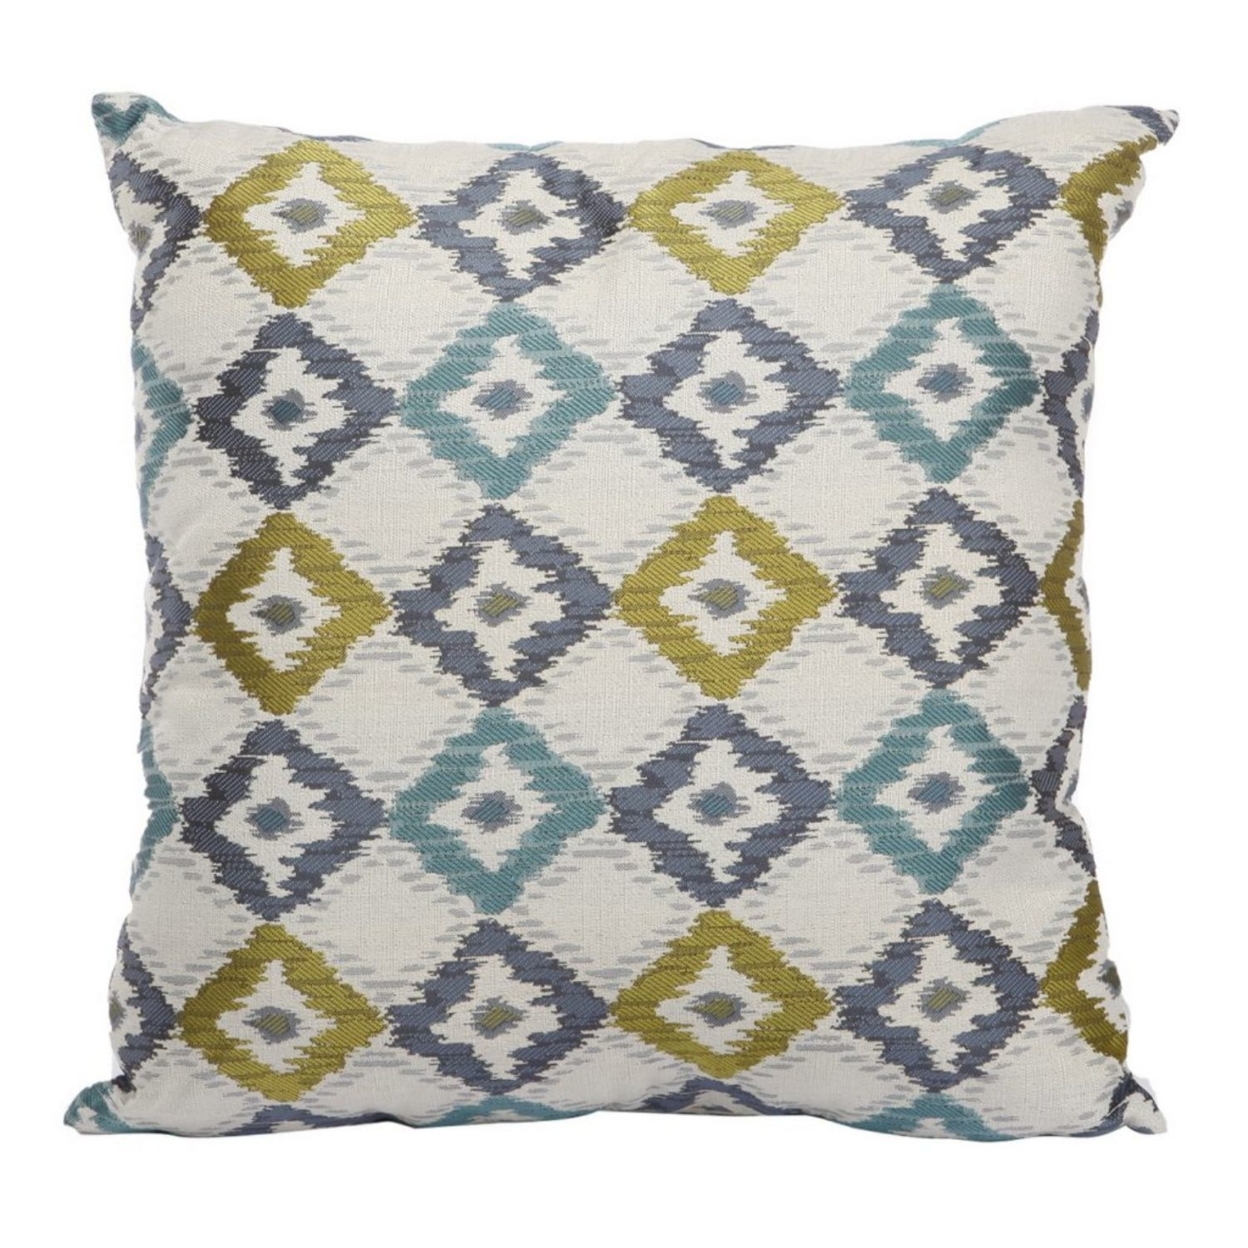 Woven Design Fabric Accent Pillow In Diamond Pattern, Multicolor- Saltoro Sherpi